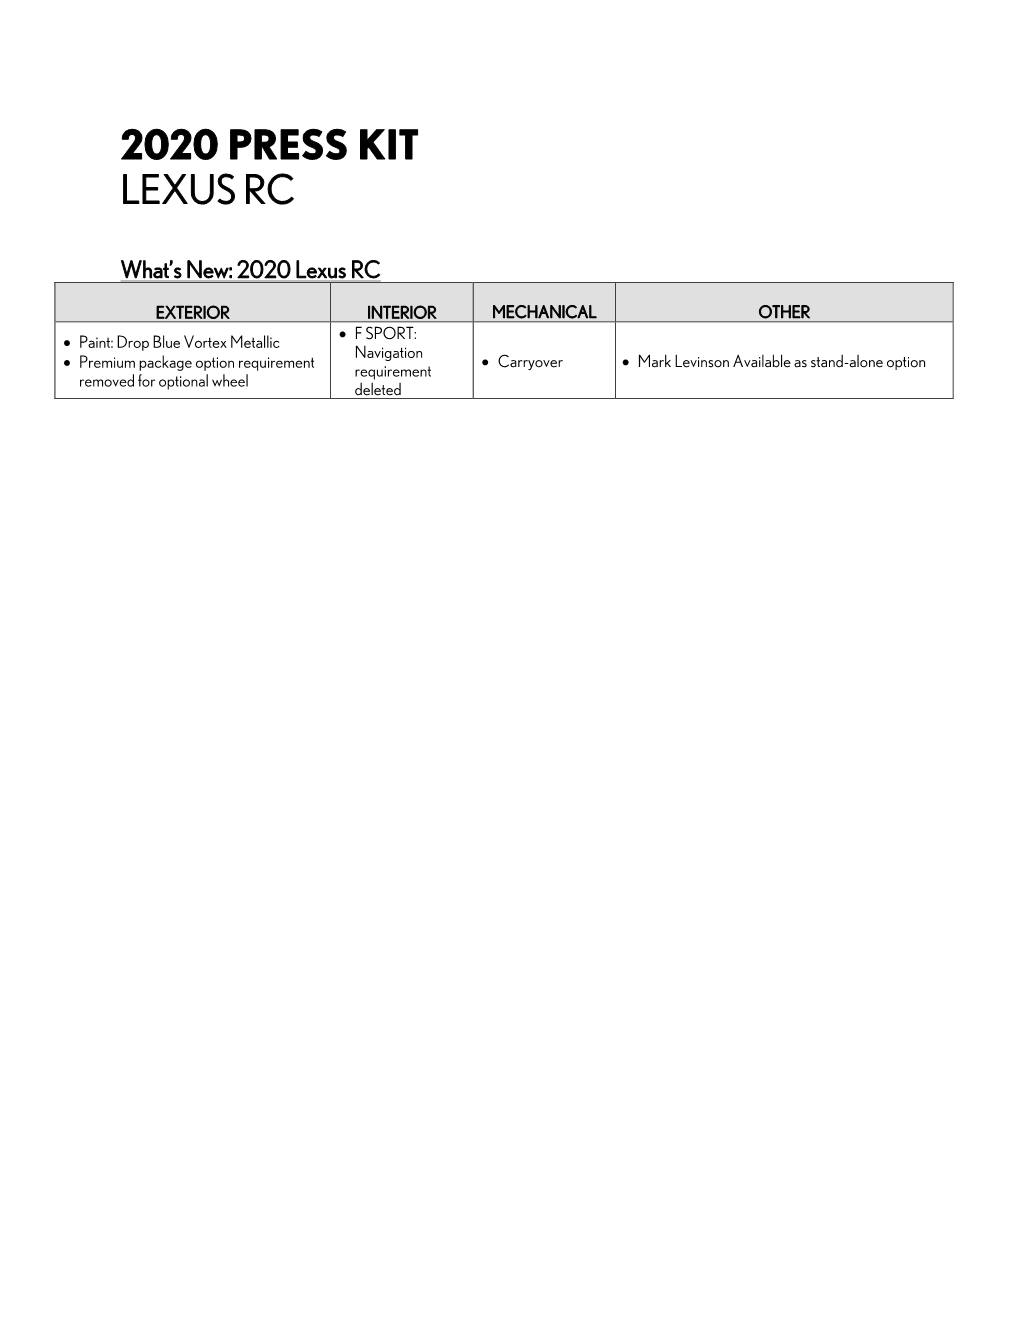 2020 Press Kit Lexus Rc